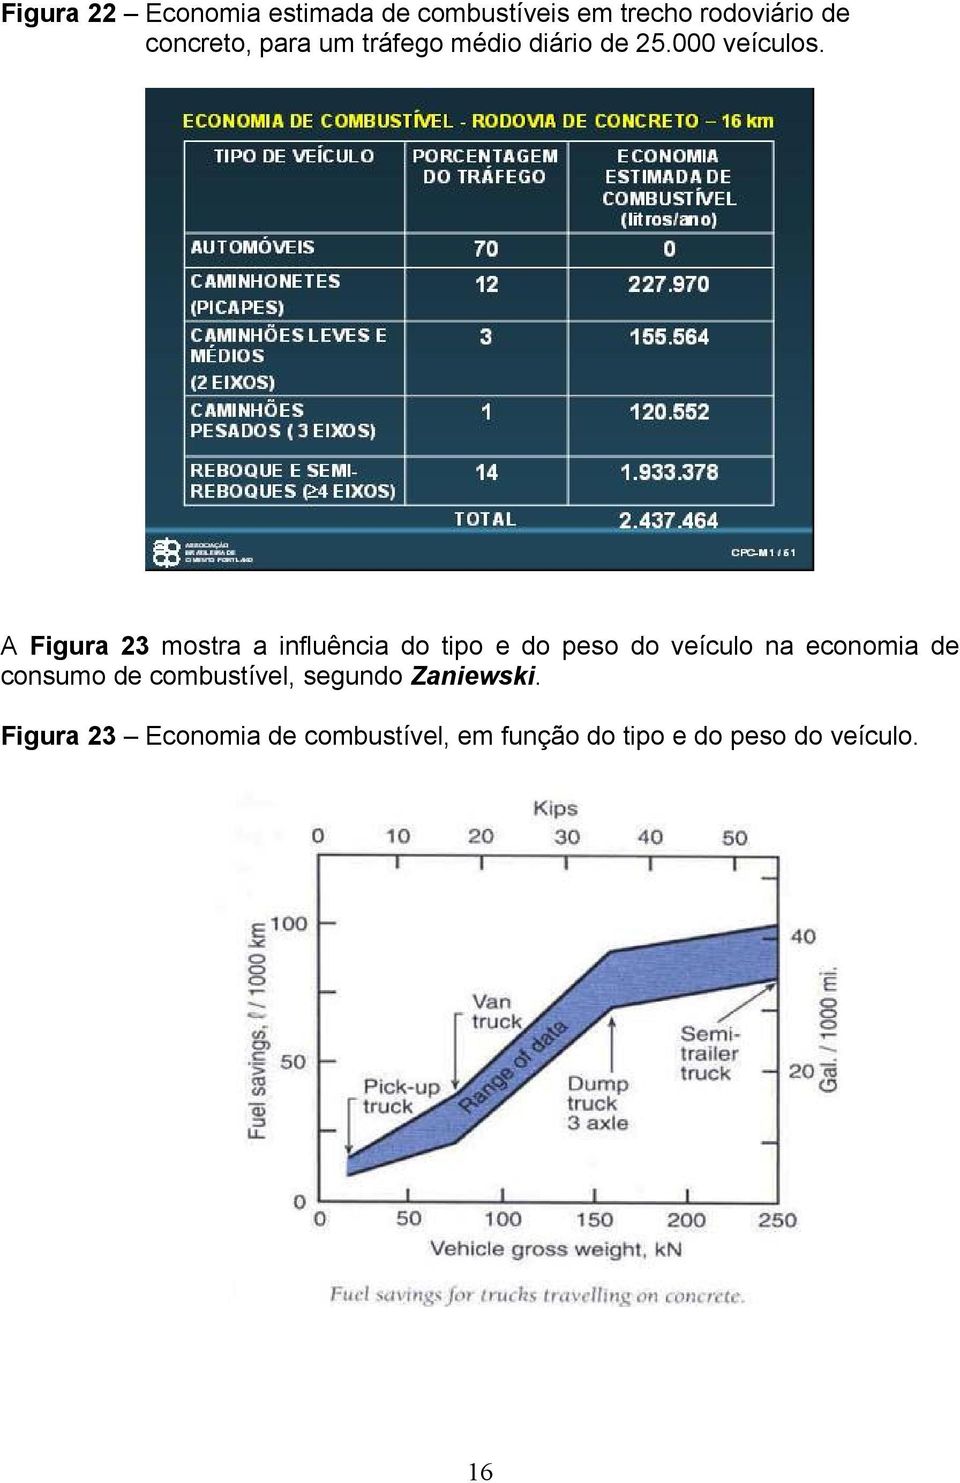 A Figura 23 mostra a influência do tipo e do peso do veículo na economia de